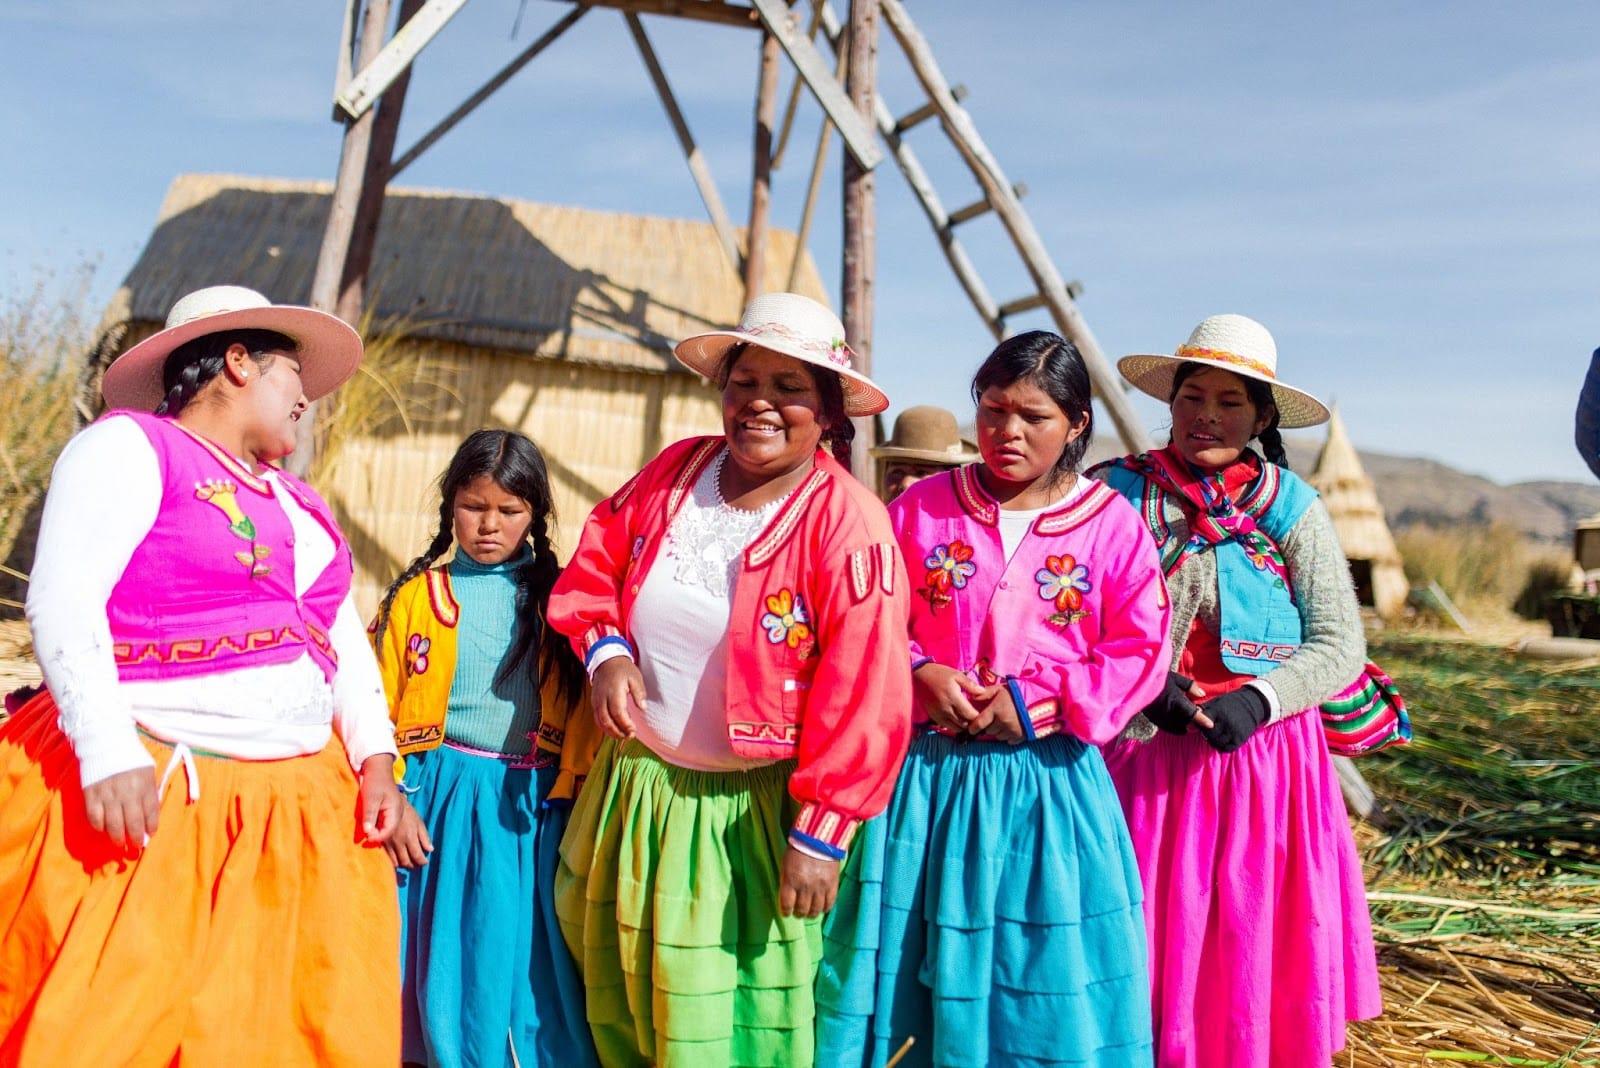 Donne in abiti colorati Cultura peruviana